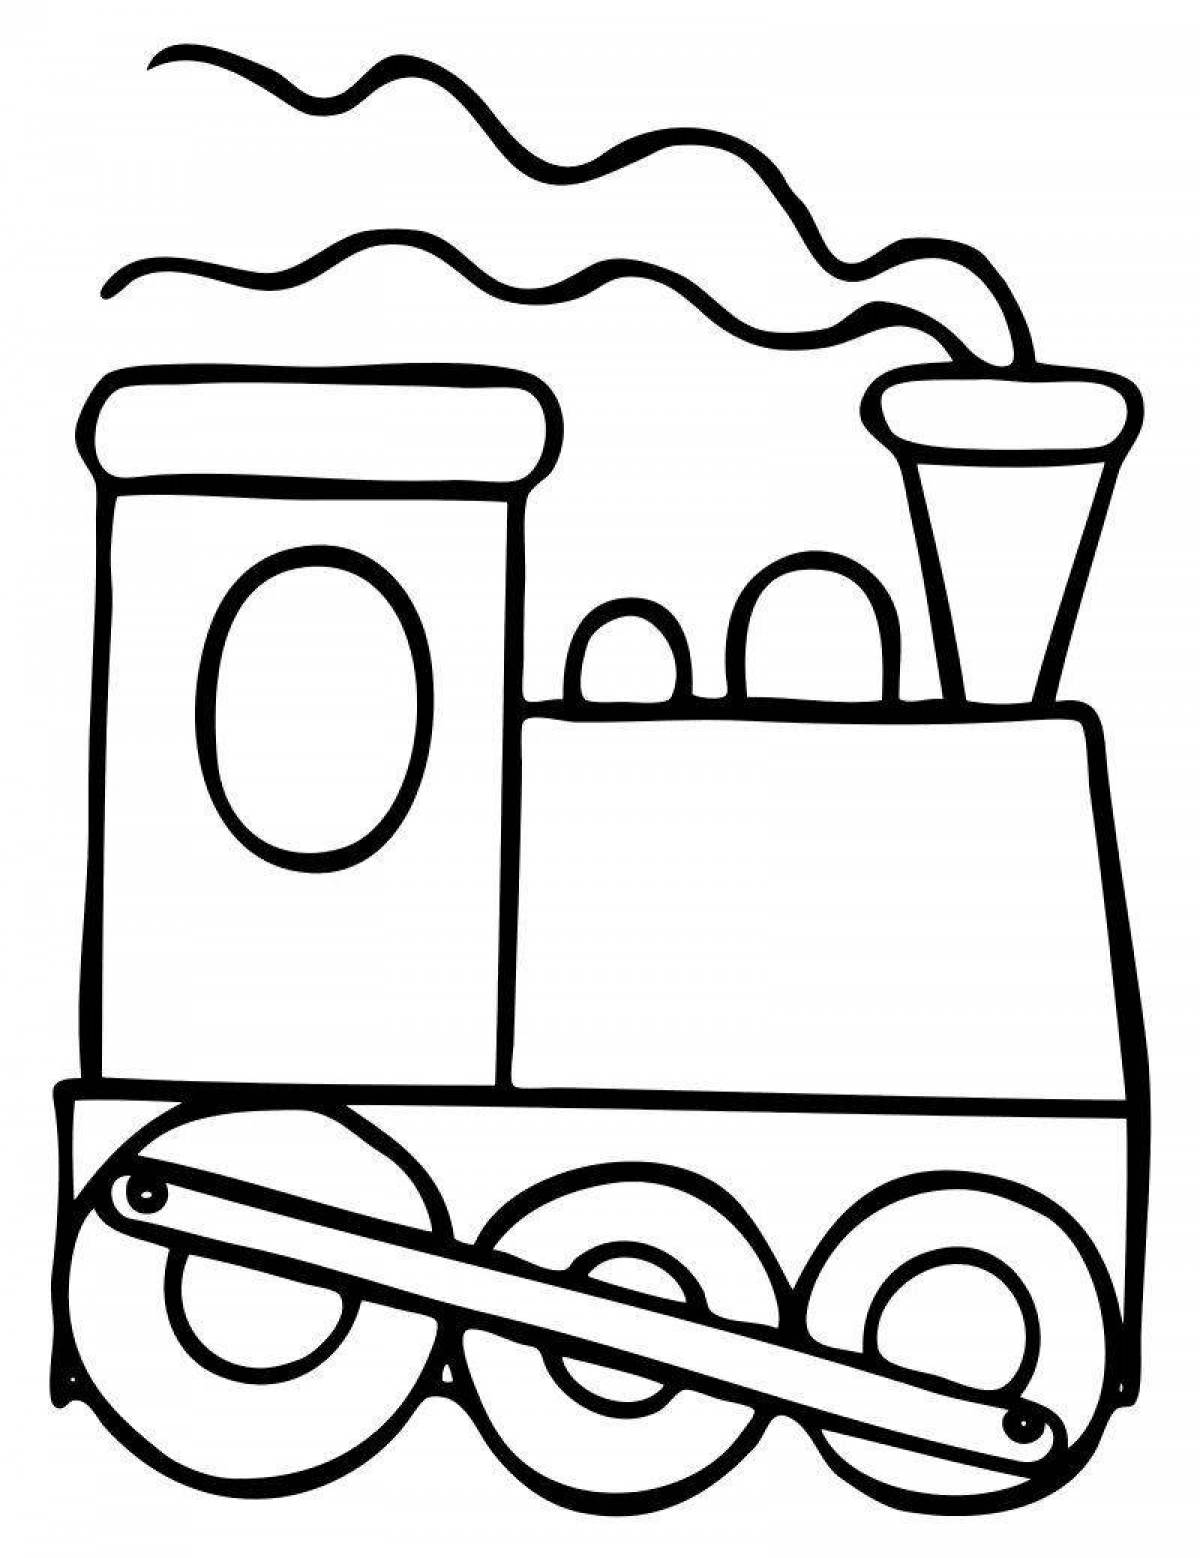 Coloring book bright locomotive